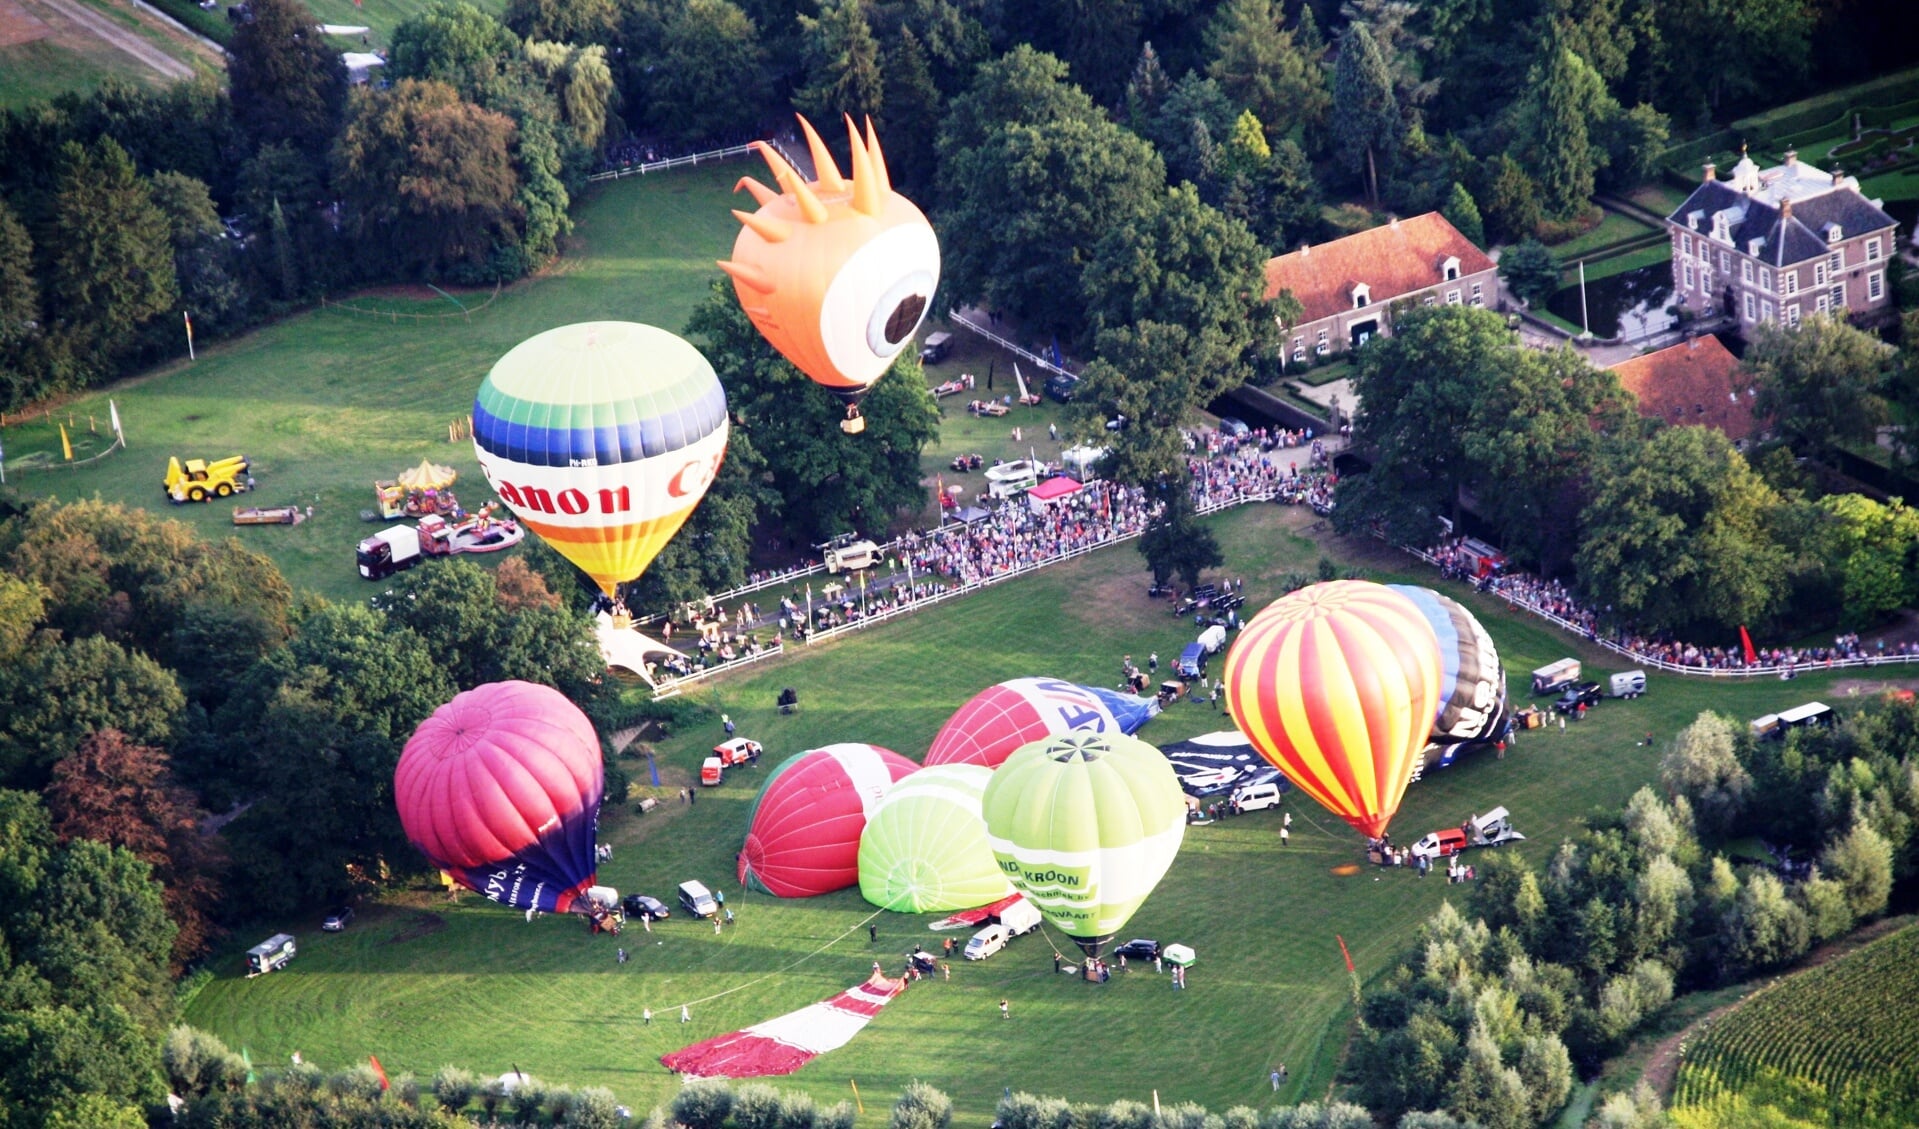 Höfteballooning bij kasteel Warmelo levert een mooi schouwspel en veel vermaak op. Foto: PR